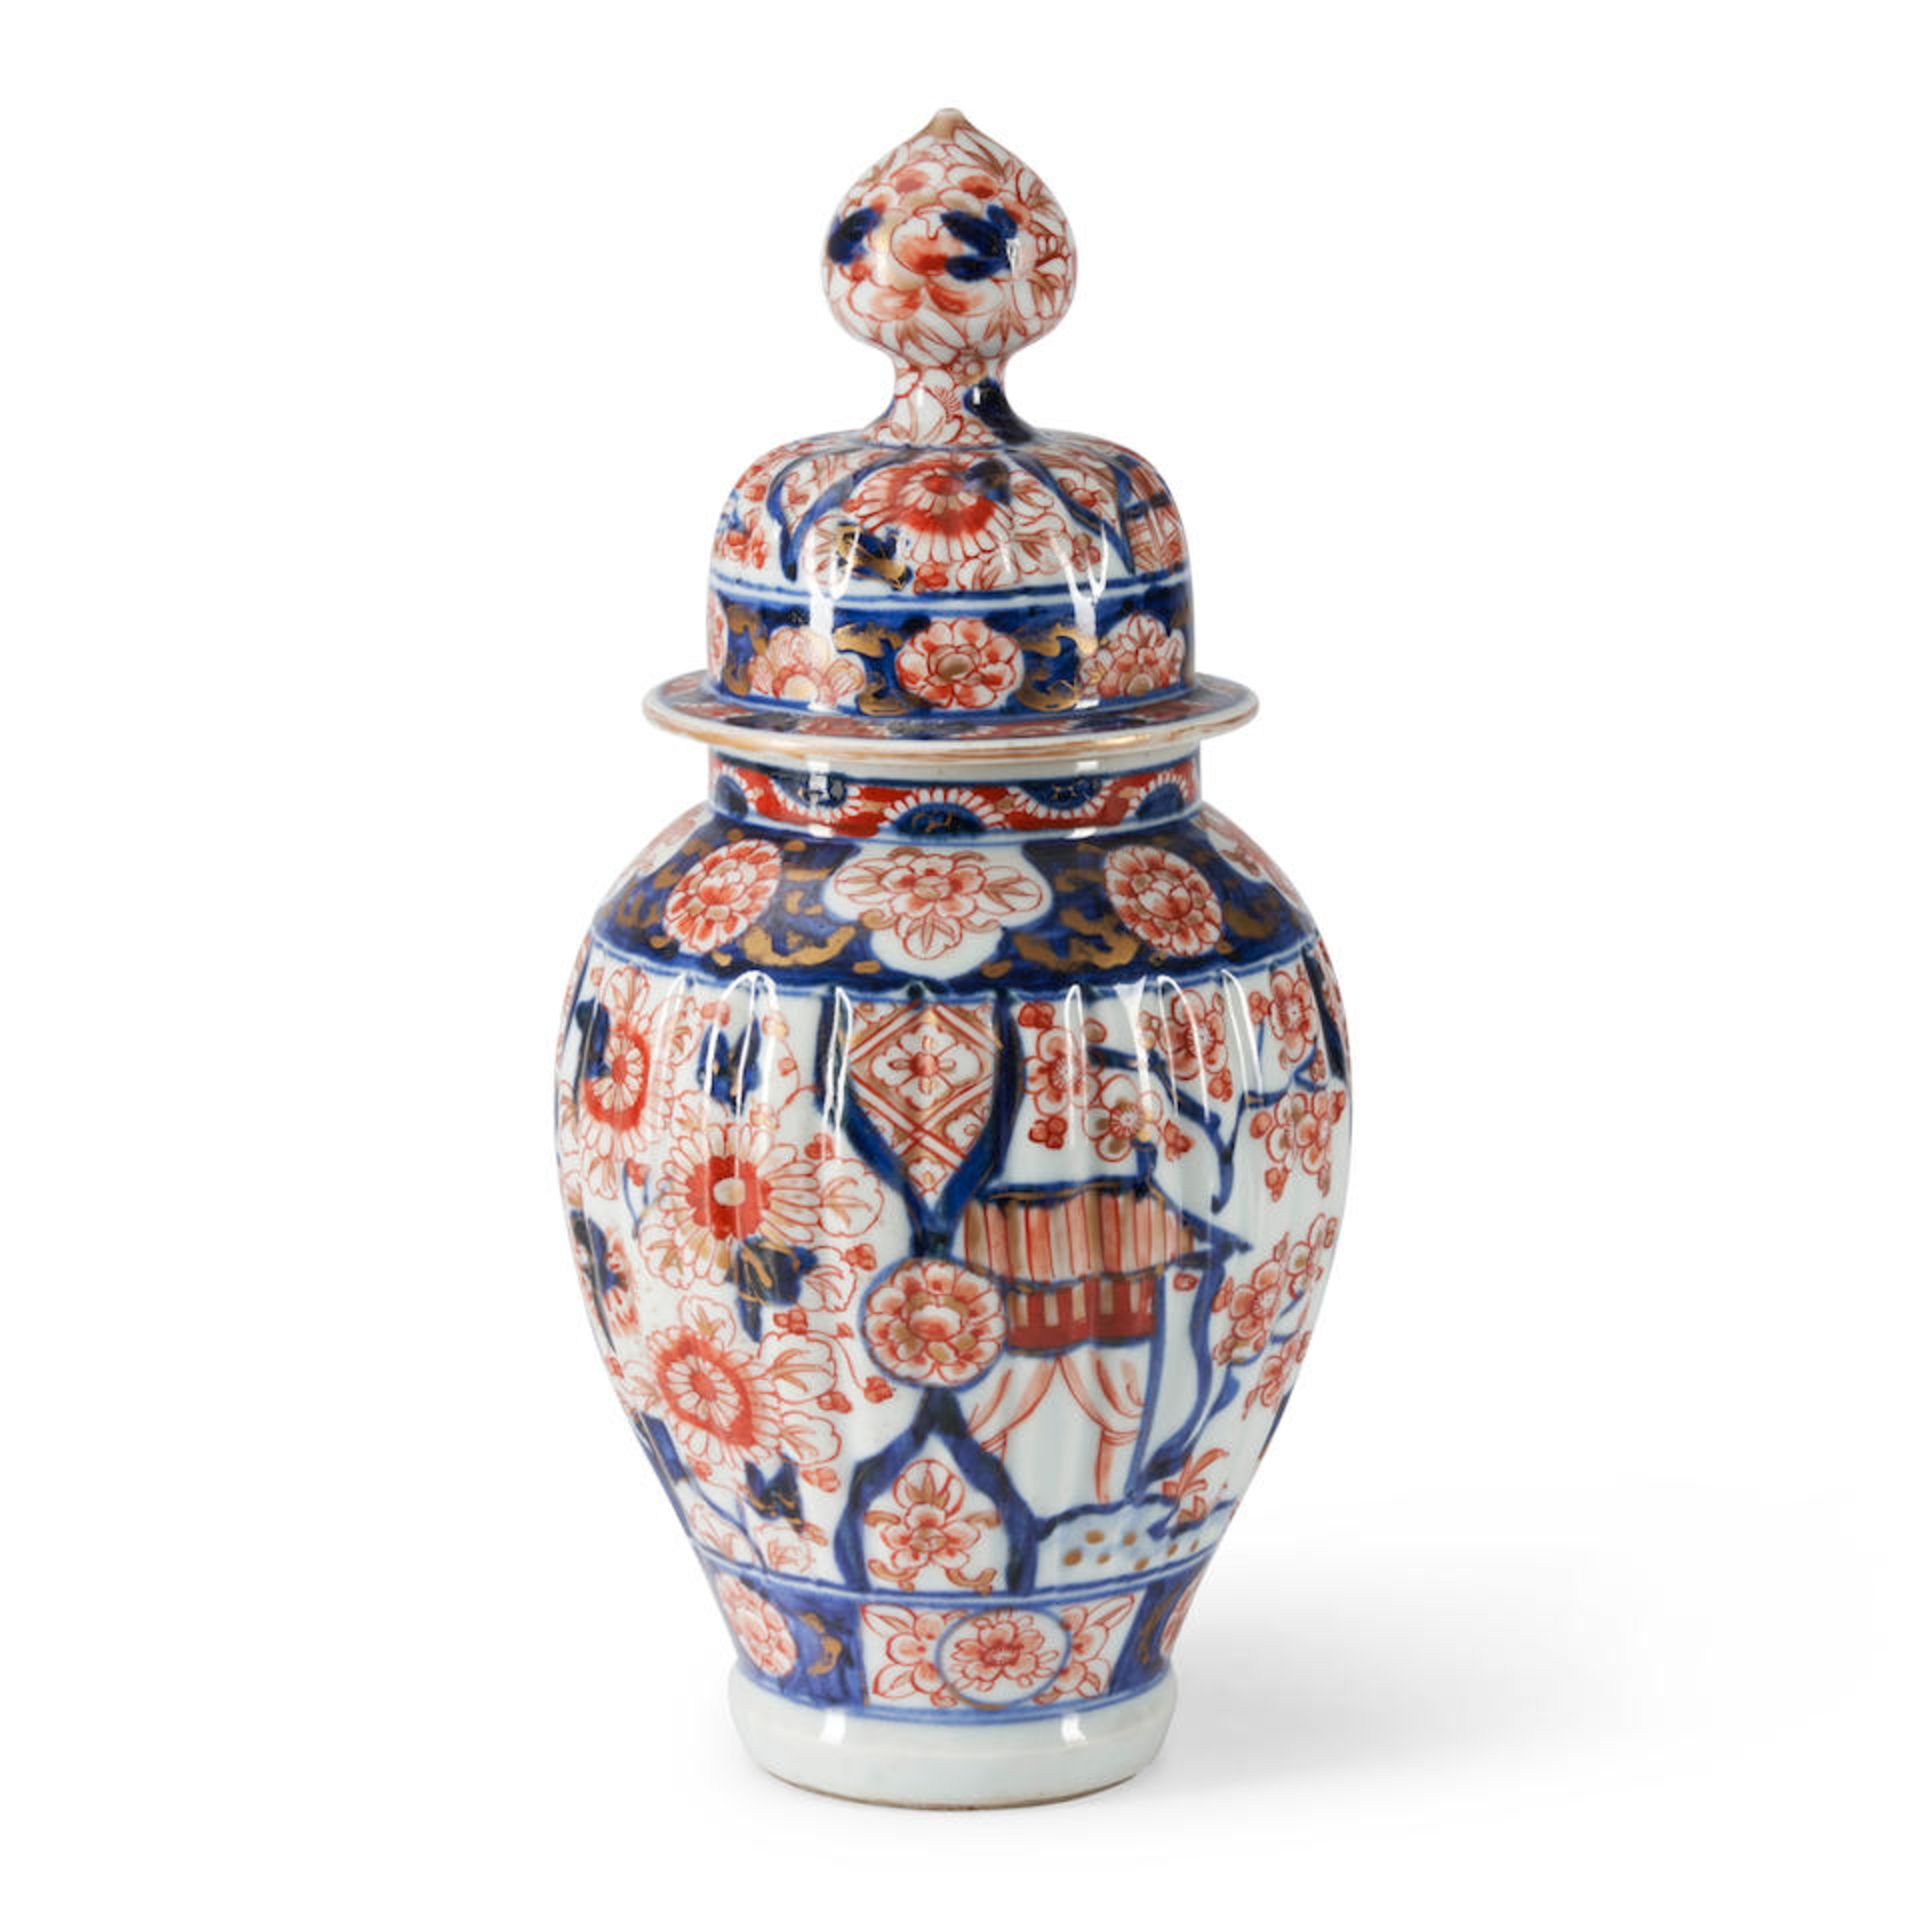 Imari Porcelain Jar and Cover, Japan, 20th century.